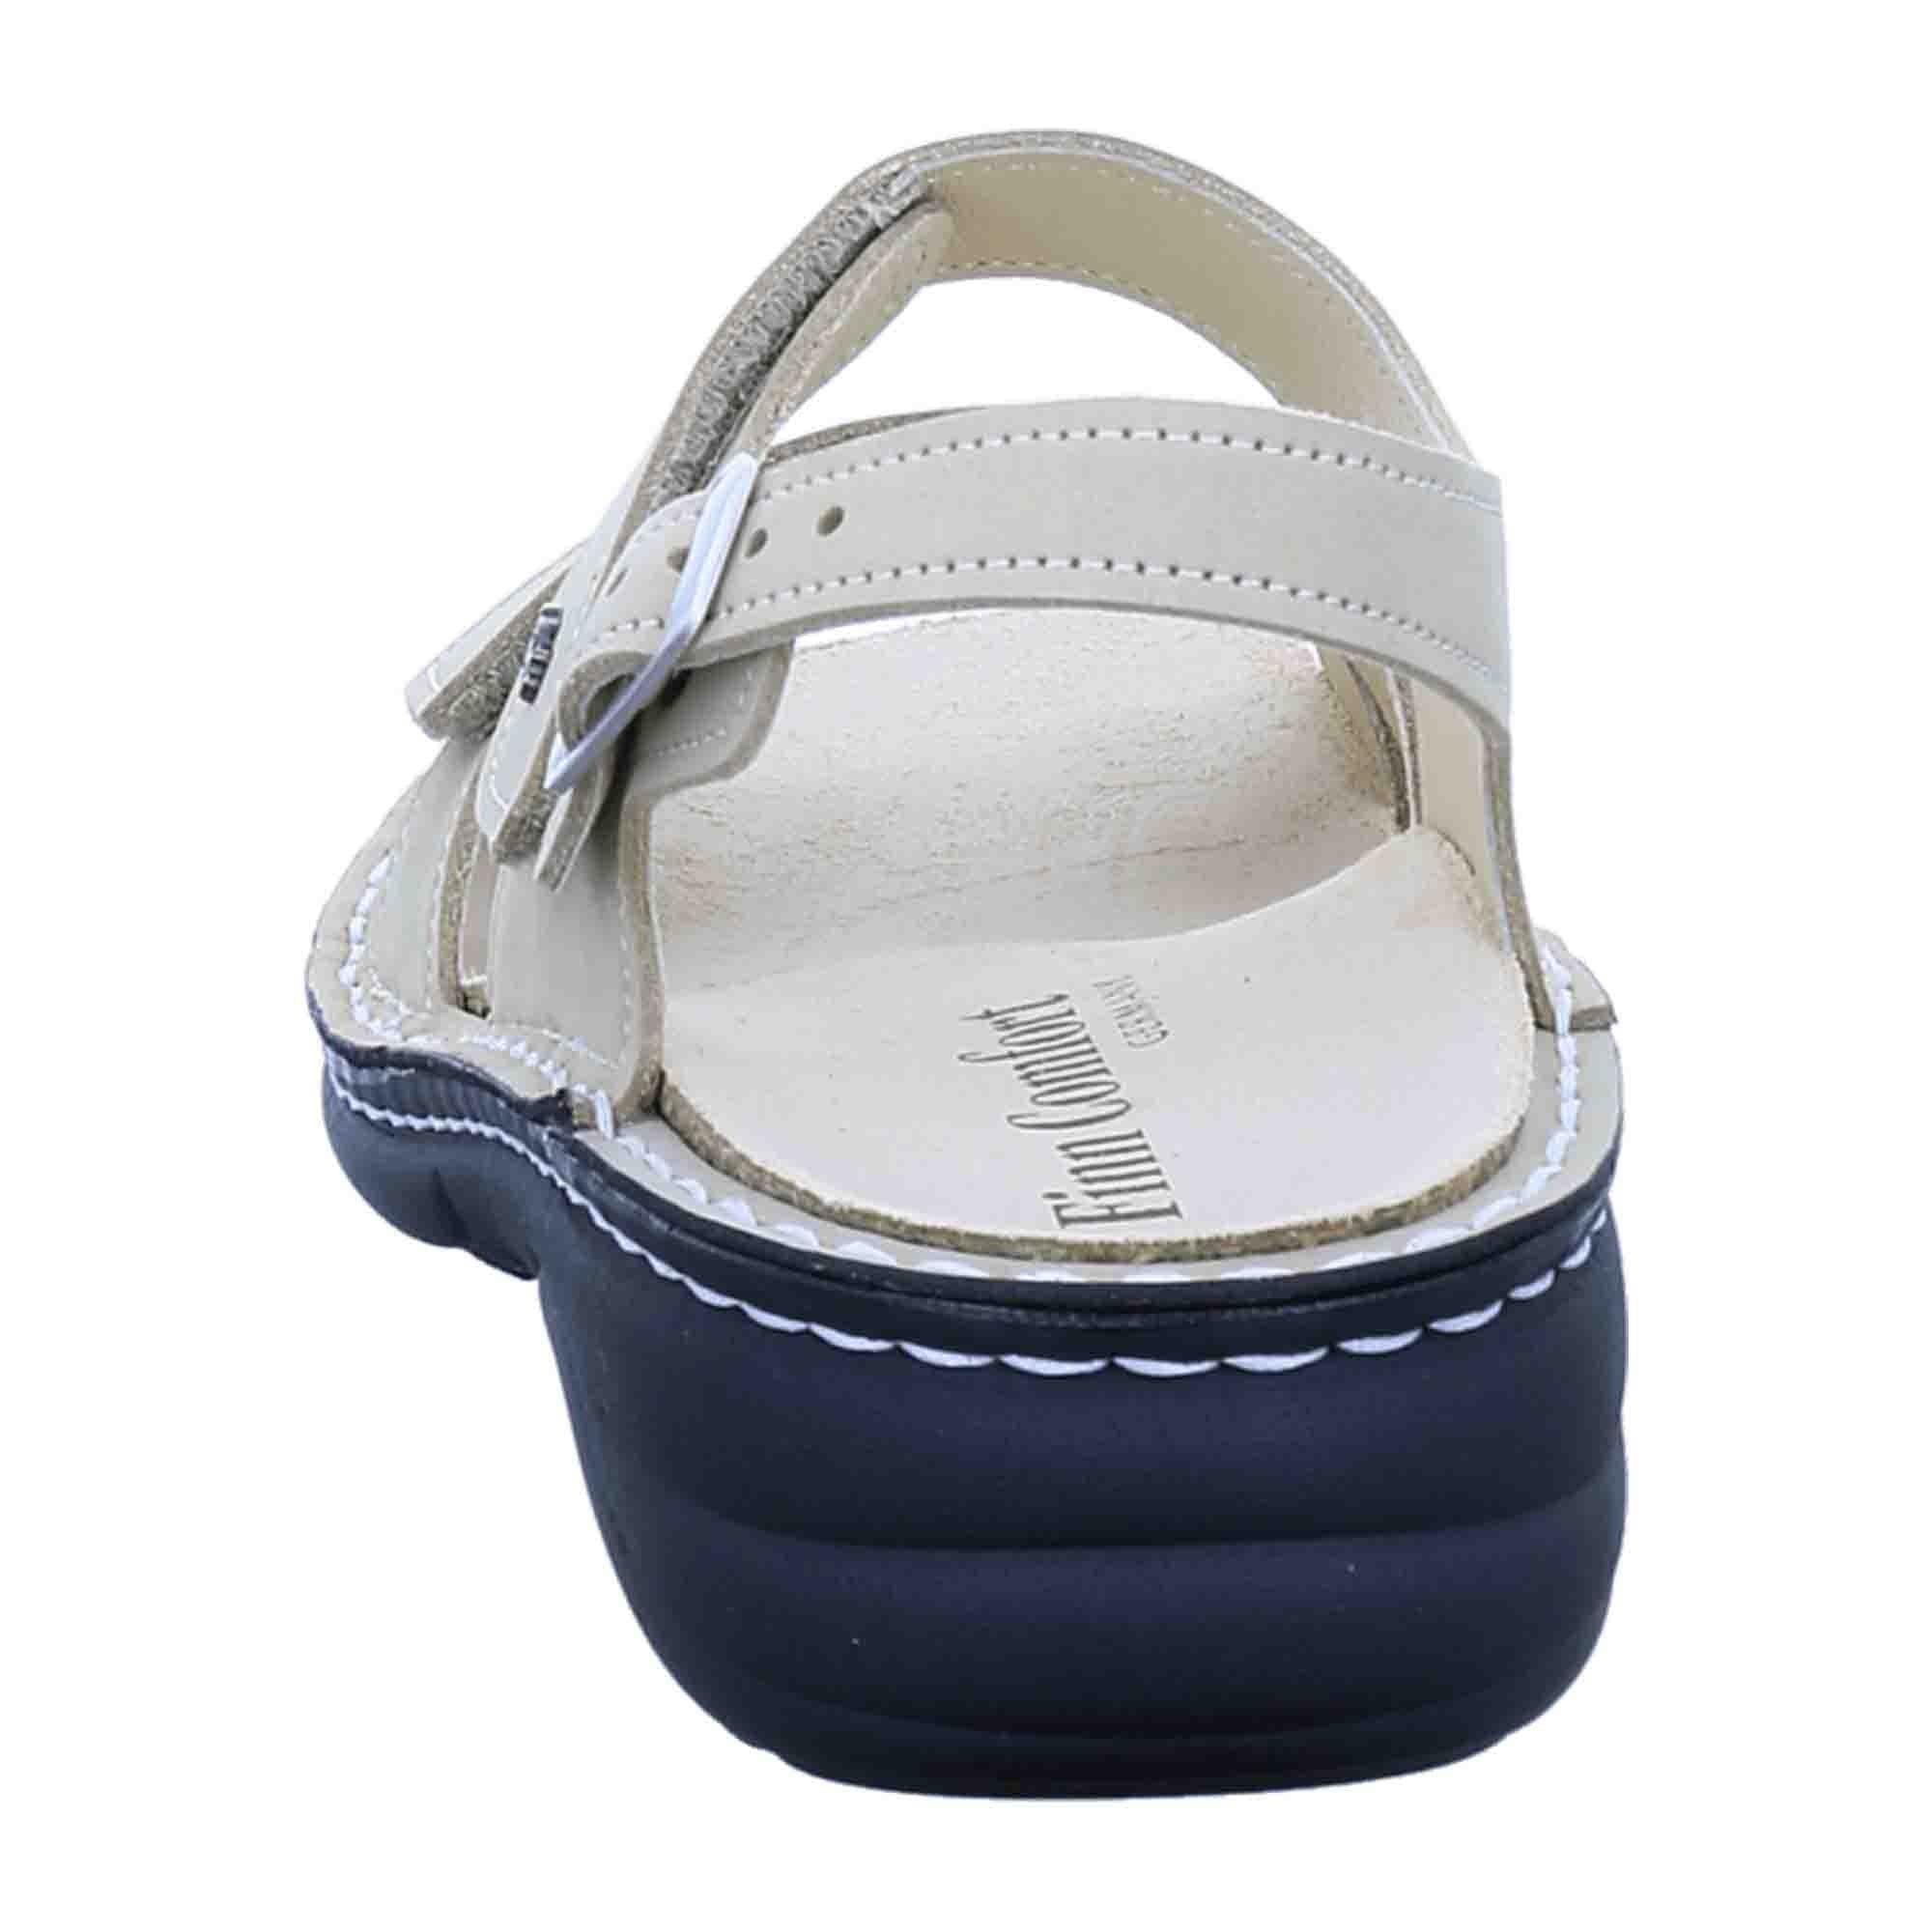 Finn Comfort Linosa Women's Sandals - Ivory Nubuck Adjustable Comfort Sandals, Beige